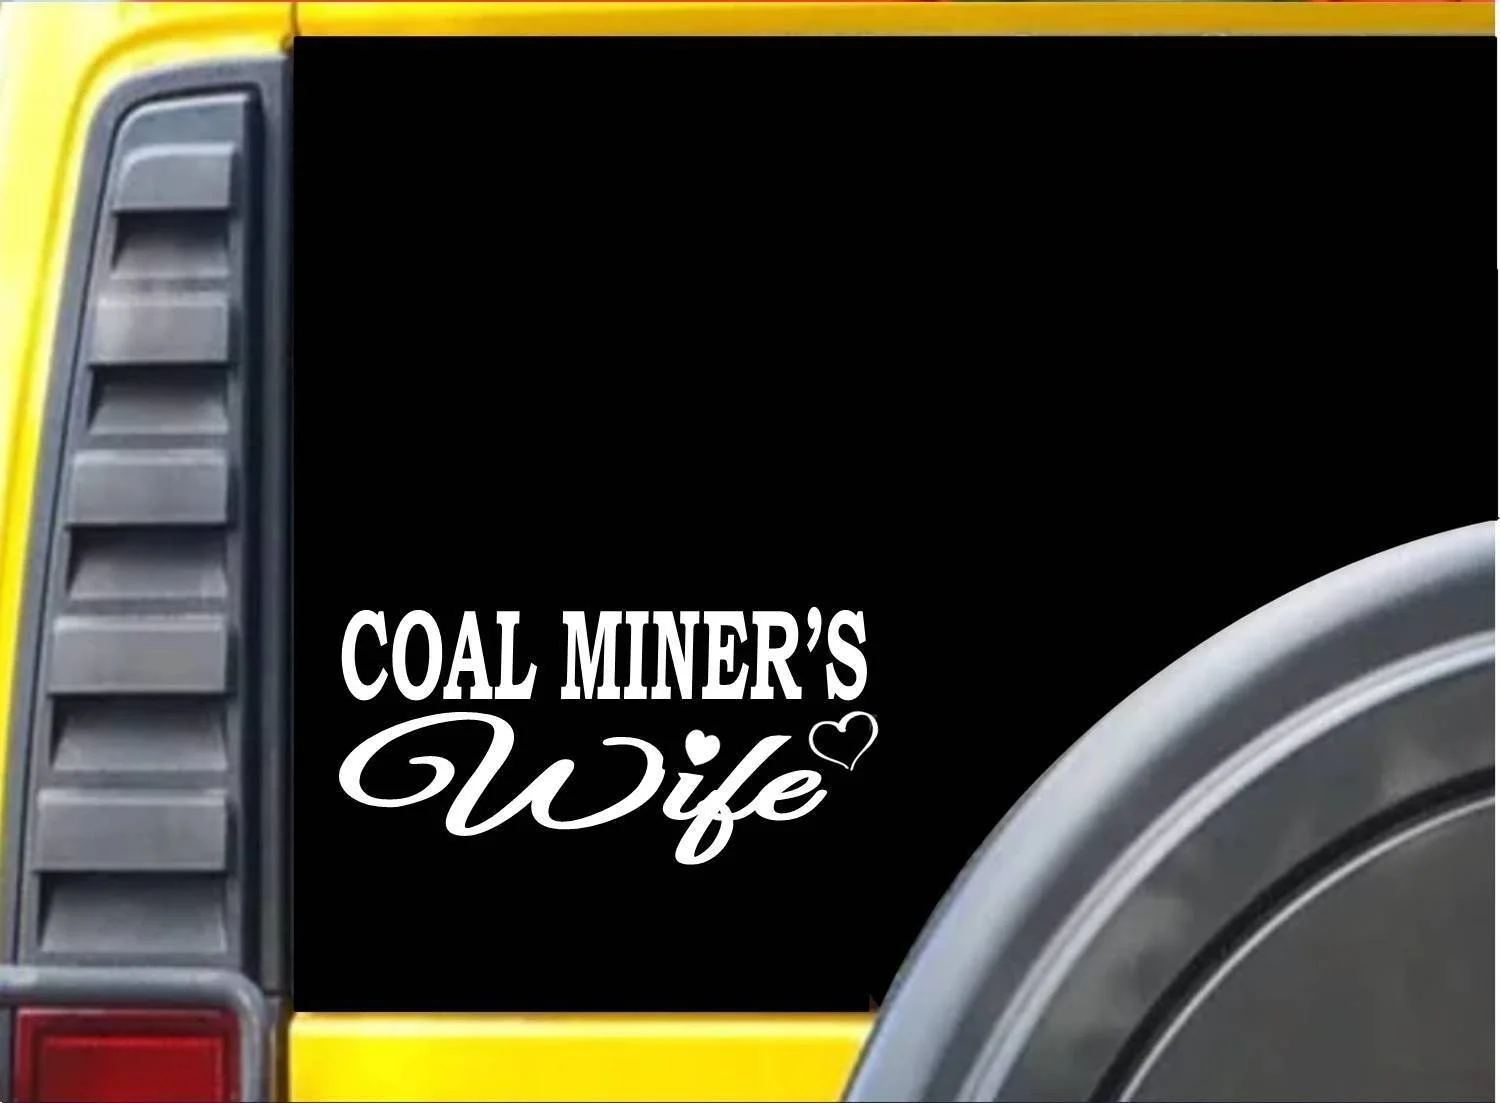 Coalminer Wife K365 8 дюймов наклейка для горного дела наклейка на компьютер